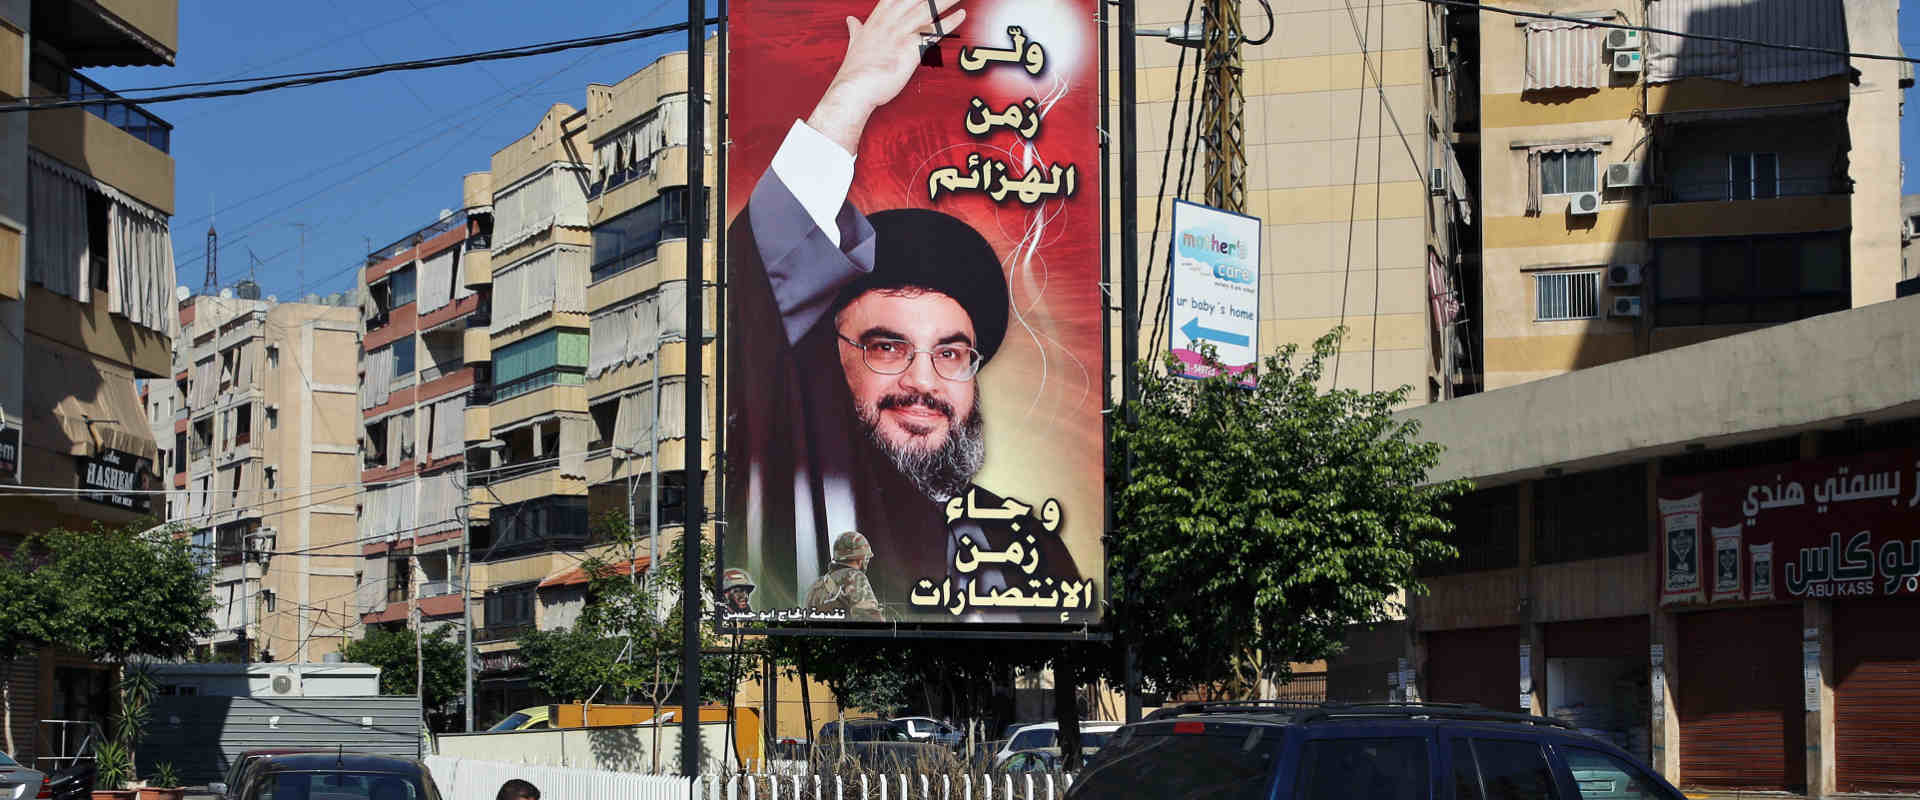 لافتات حزب الله فى بيروت